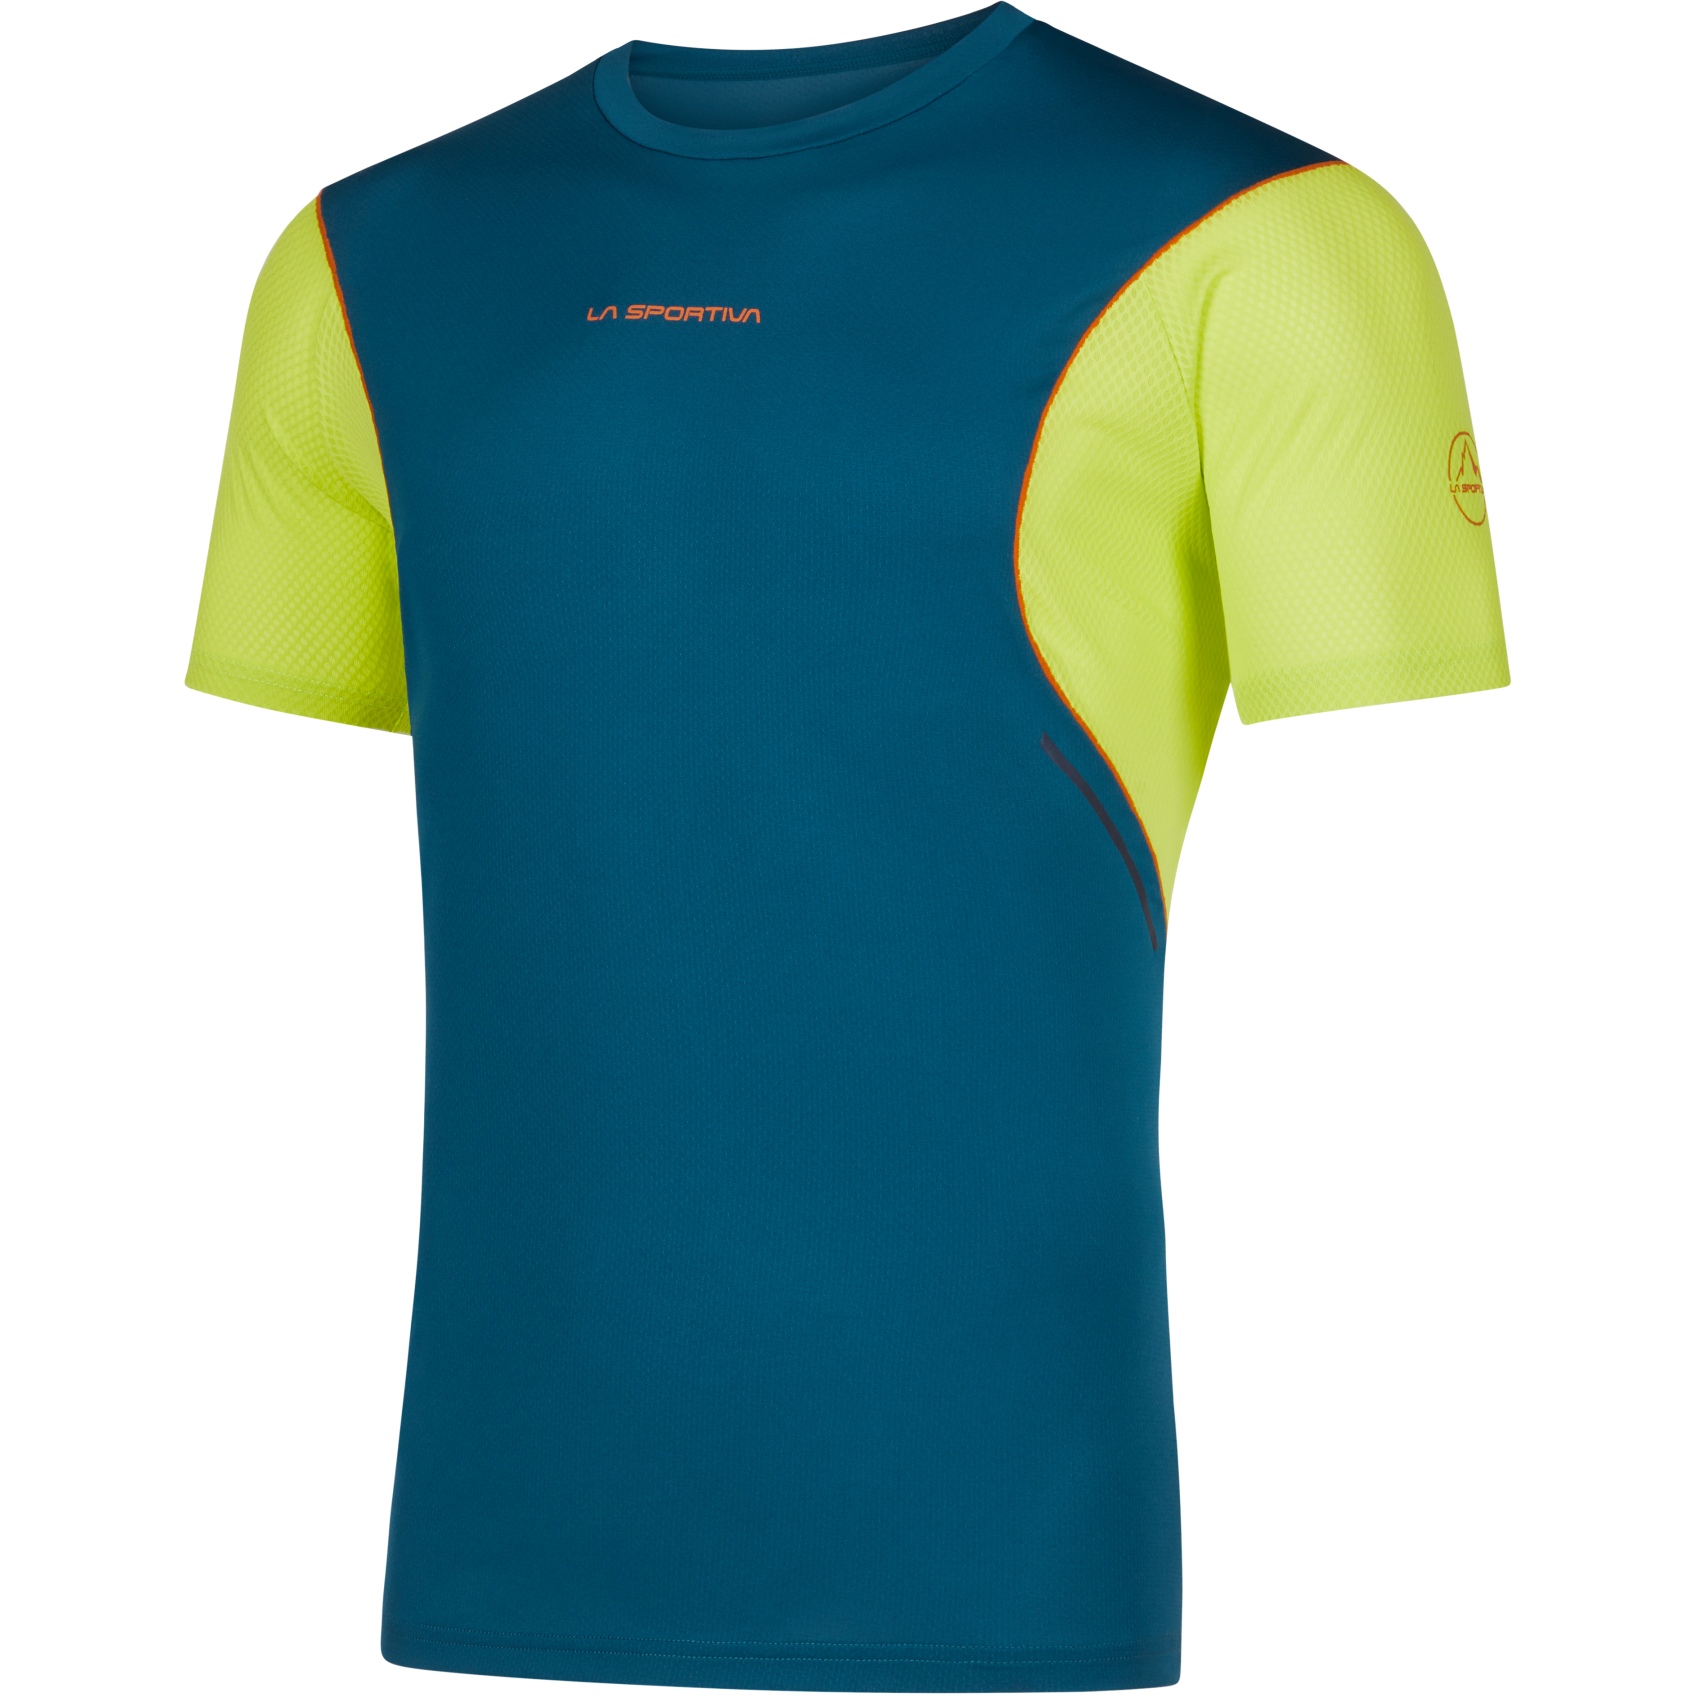 Produktbild von La Sportiva Resolute T-Shirt Herren - Storm Blue/Lime Punch